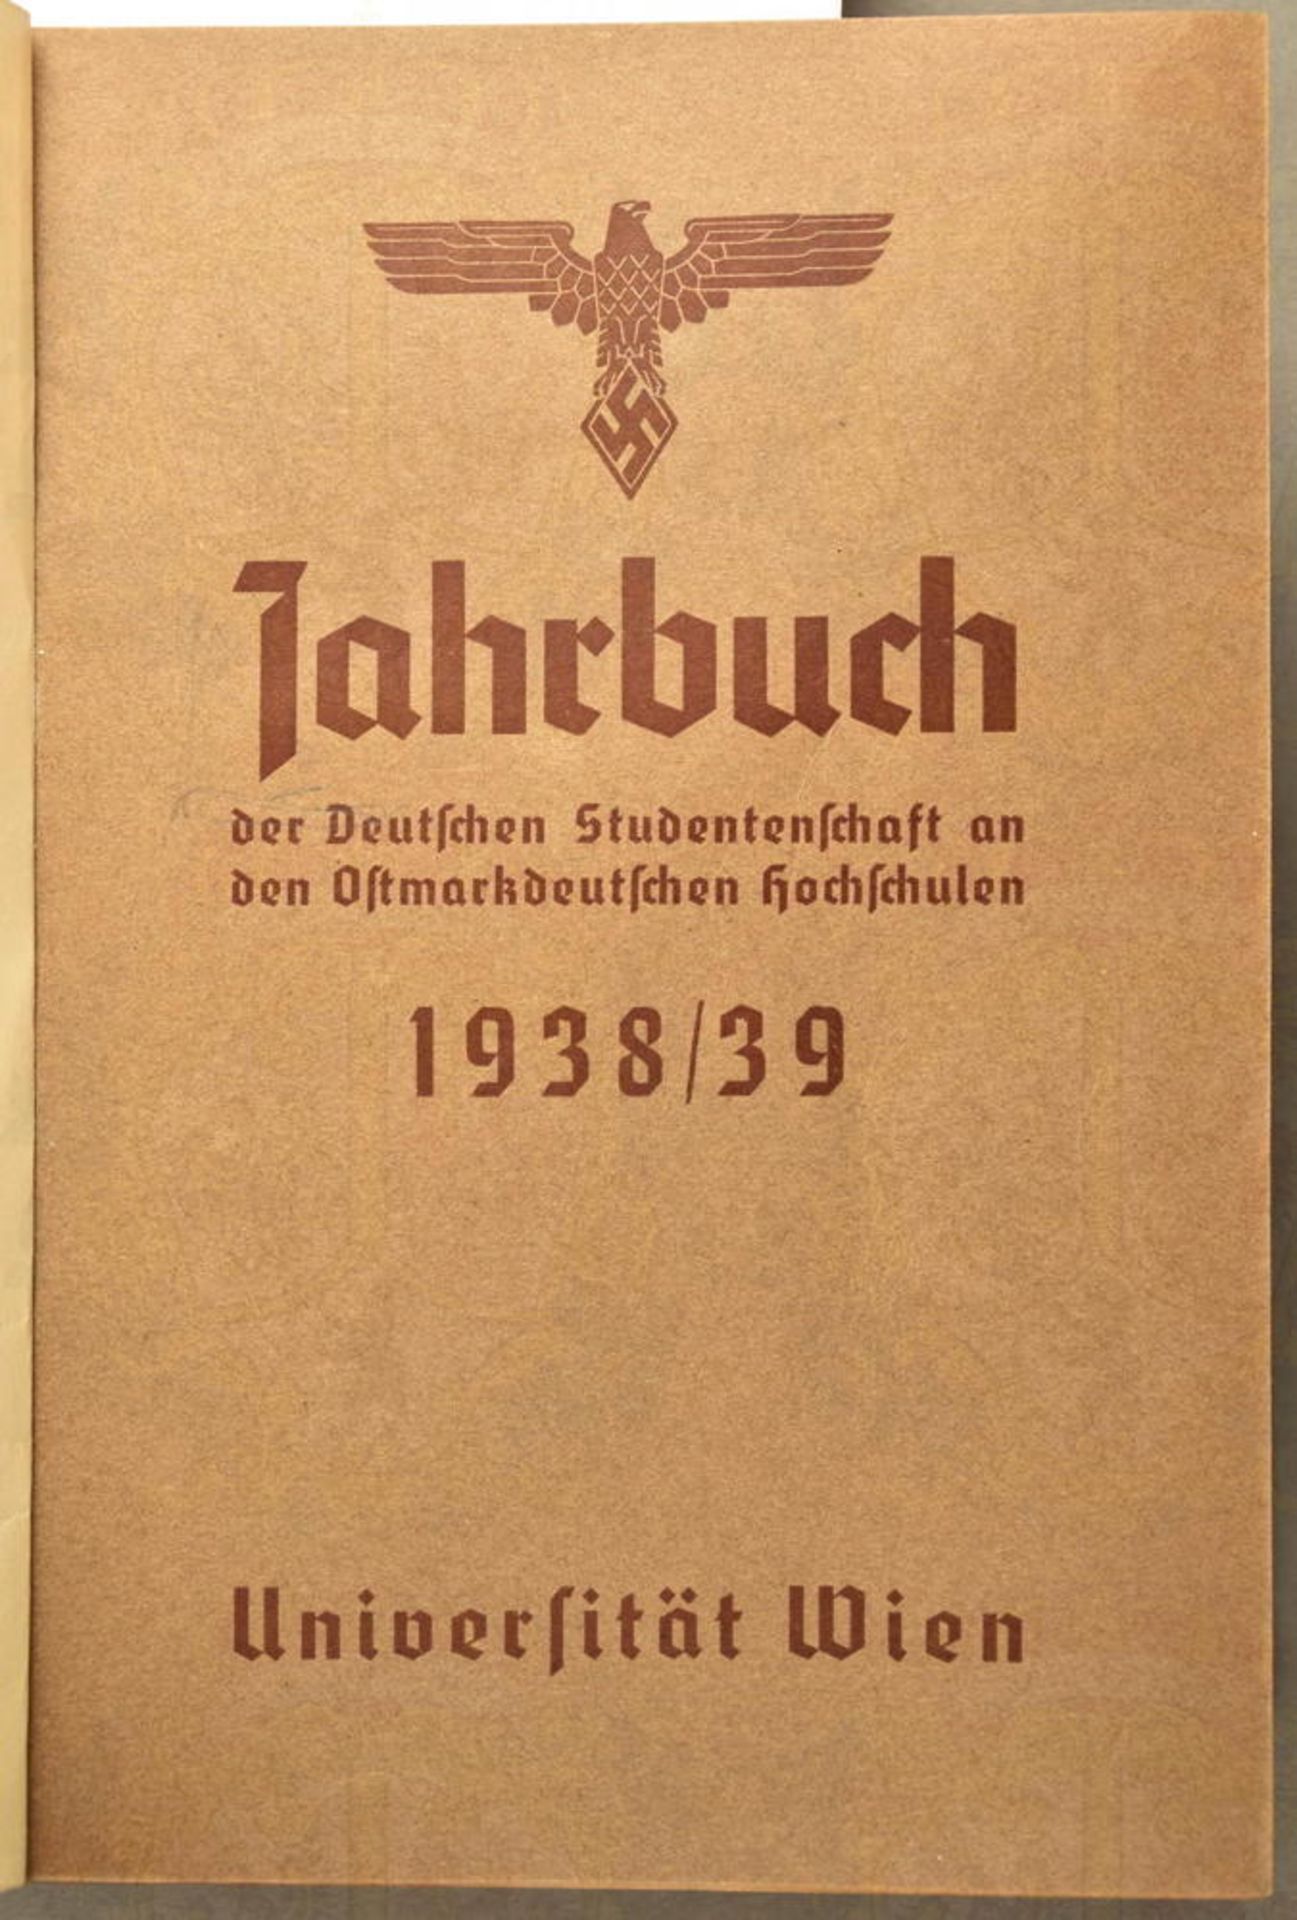 Jahrbuch der Deutschen Studentenschaft - Bild 2 aus 3